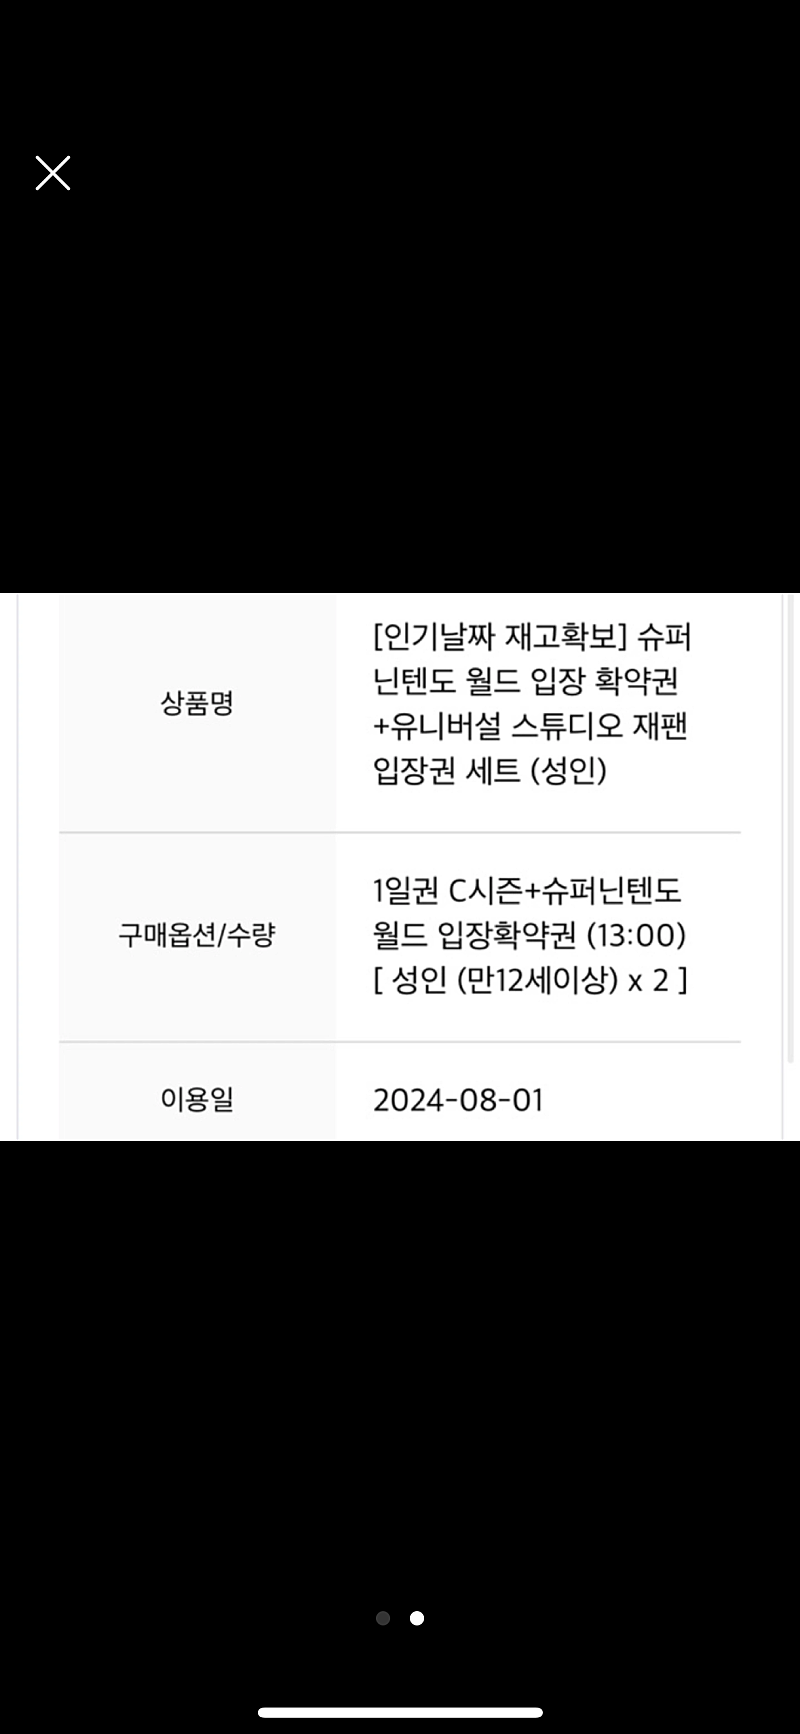 재팬유니버셜스튜디오입장권+닌텐도월드 8월1일 2장 20만원